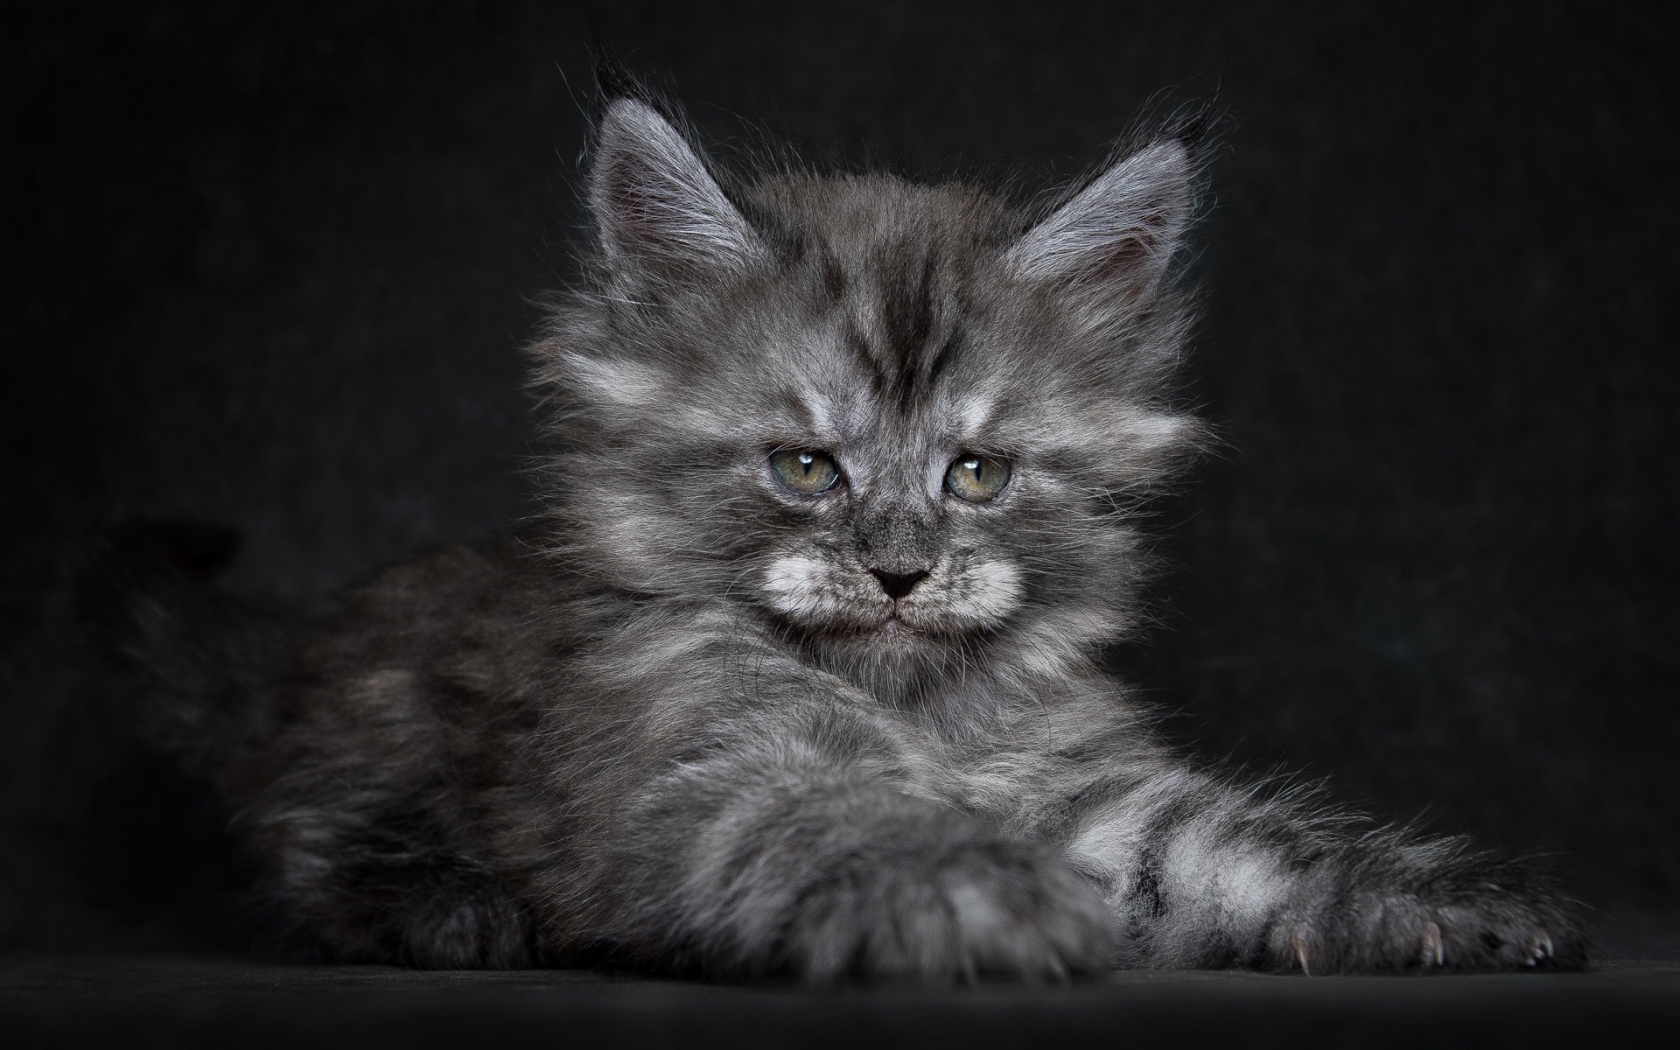 Cute Fluffy Kitten for 1680 x 1050 widescreen resolution